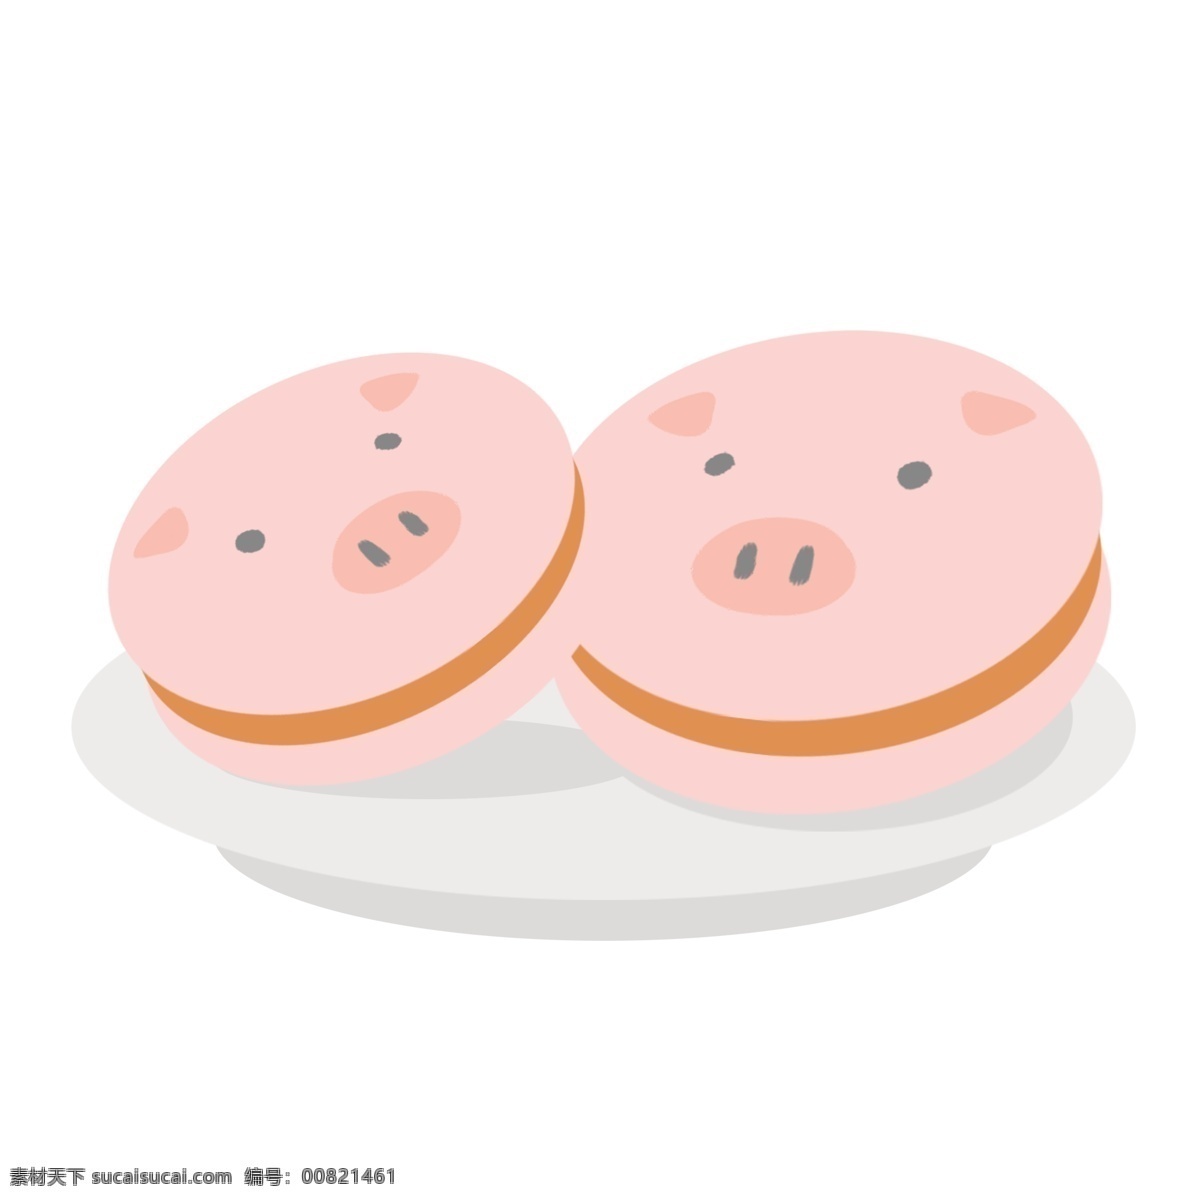 美食 食品 小 猪 饼干 小猪 粉色 面包 可爱 卡通